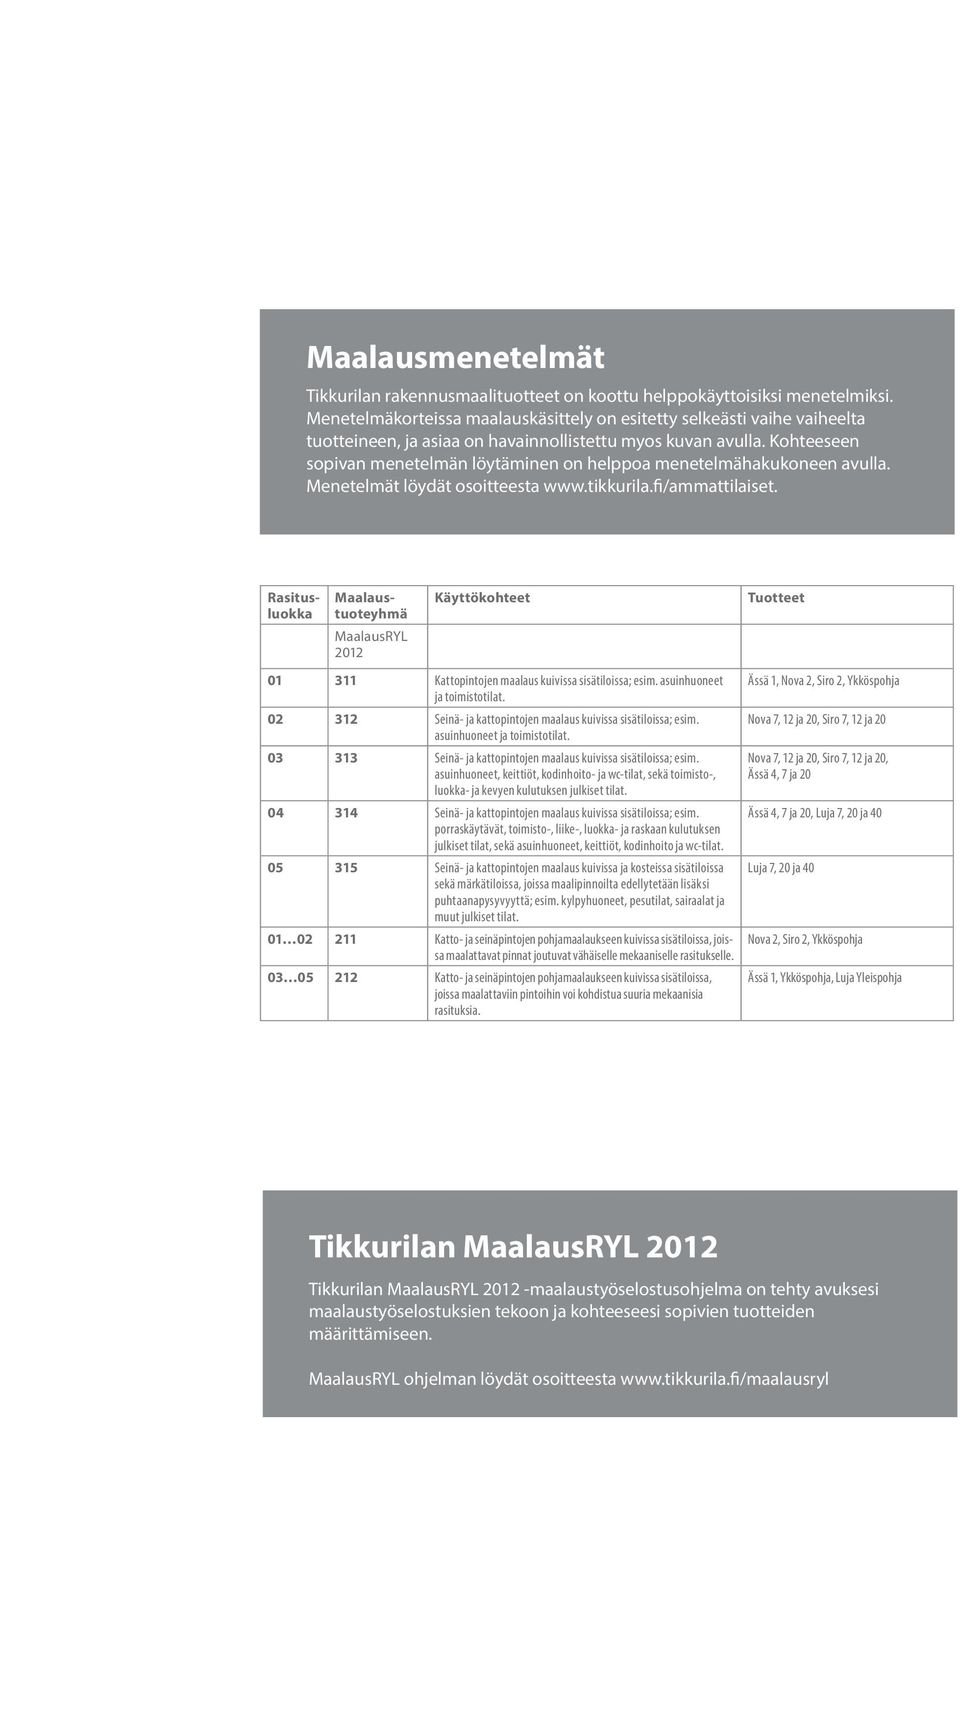 Kohteeseen sopivan menetelmän löytäminen on helppoa menetelmähakukoneen avulla. Menetelmät löydät osoitteesta www.tikkurila.fi/ammattilaiset.